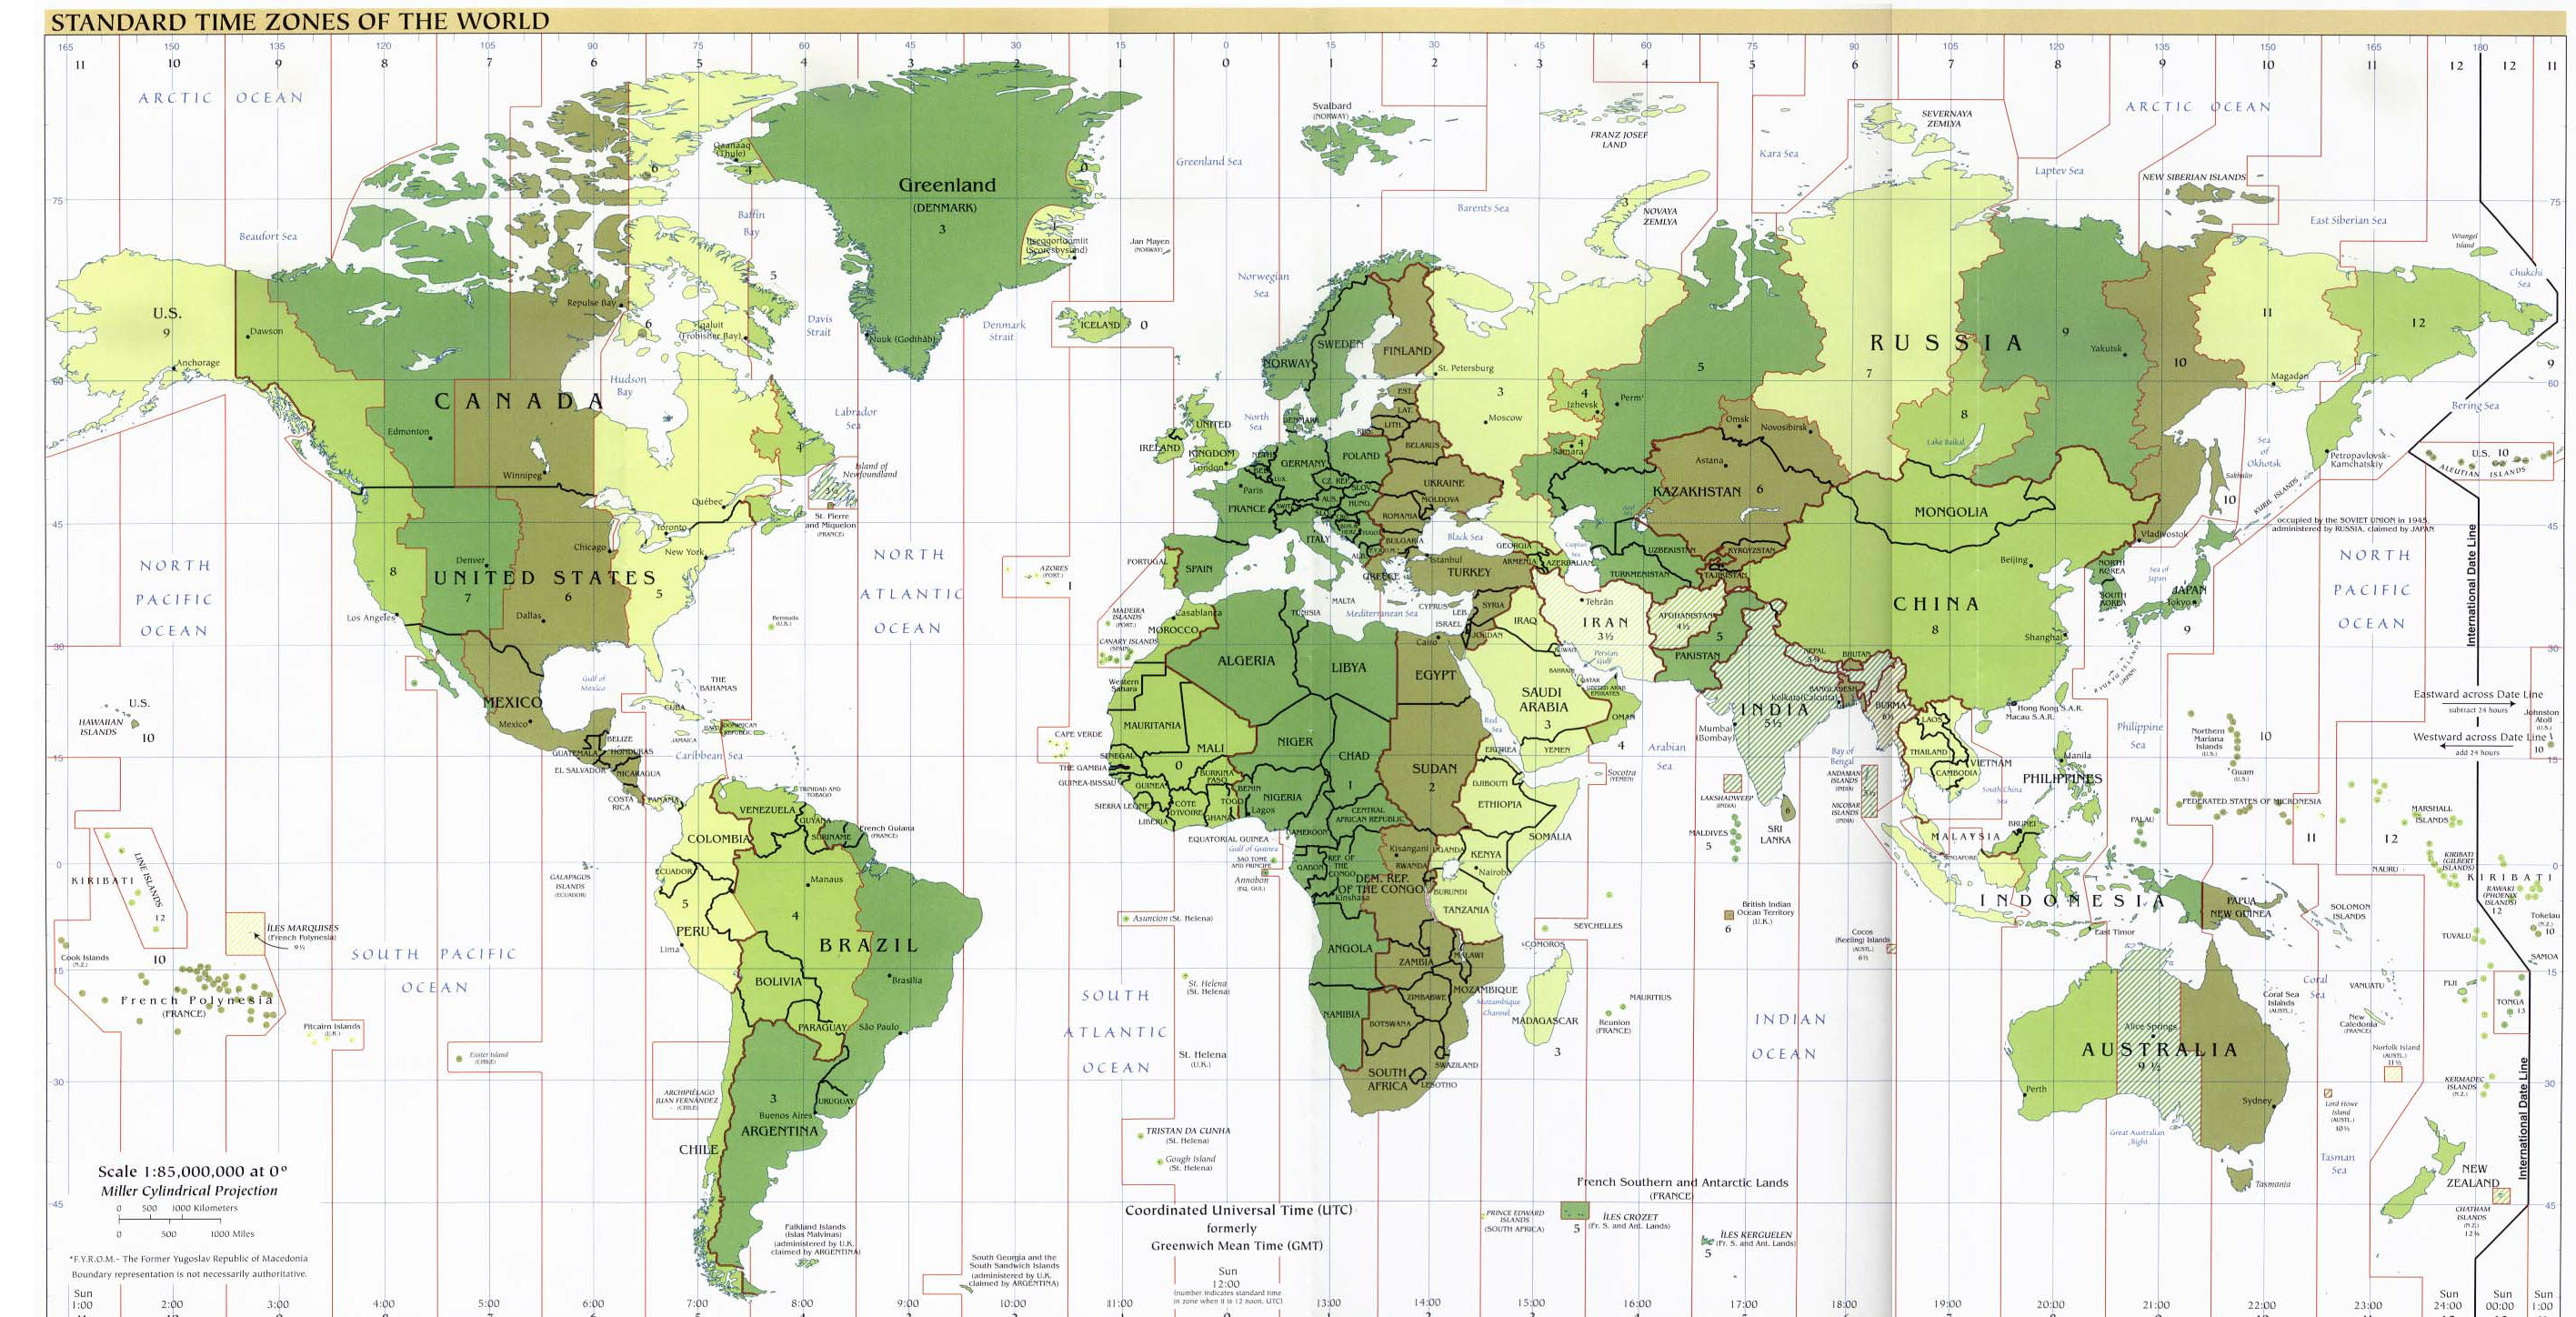 Zonas horarias estándar del mundo